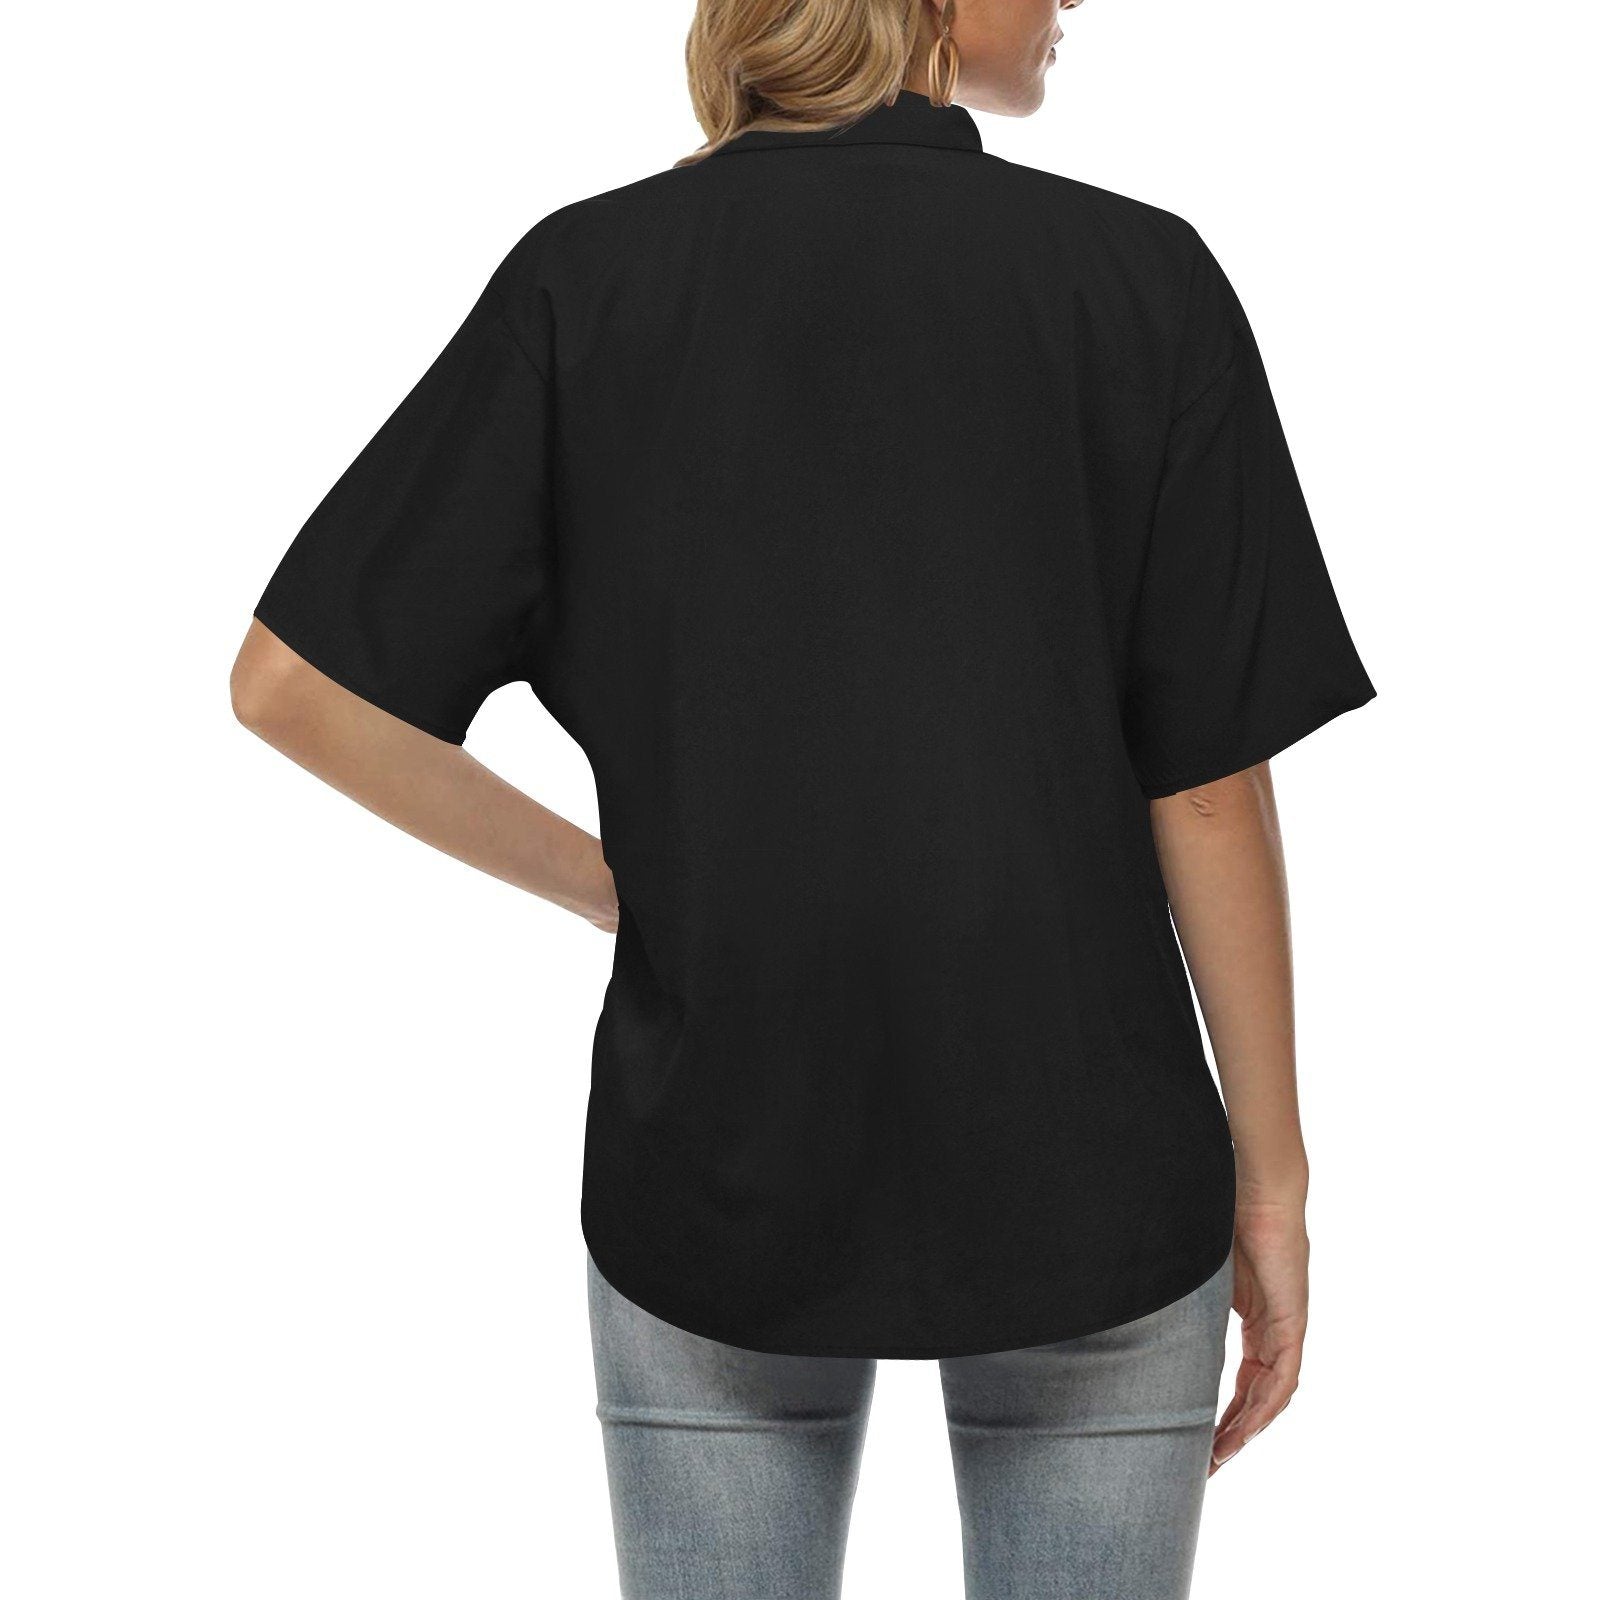 49 Dzine Logomark Dress Code All Over Print Hawaiian Shirt for Women (Model T58) Hawaiian Shirt for Women (T58) e-joyer 